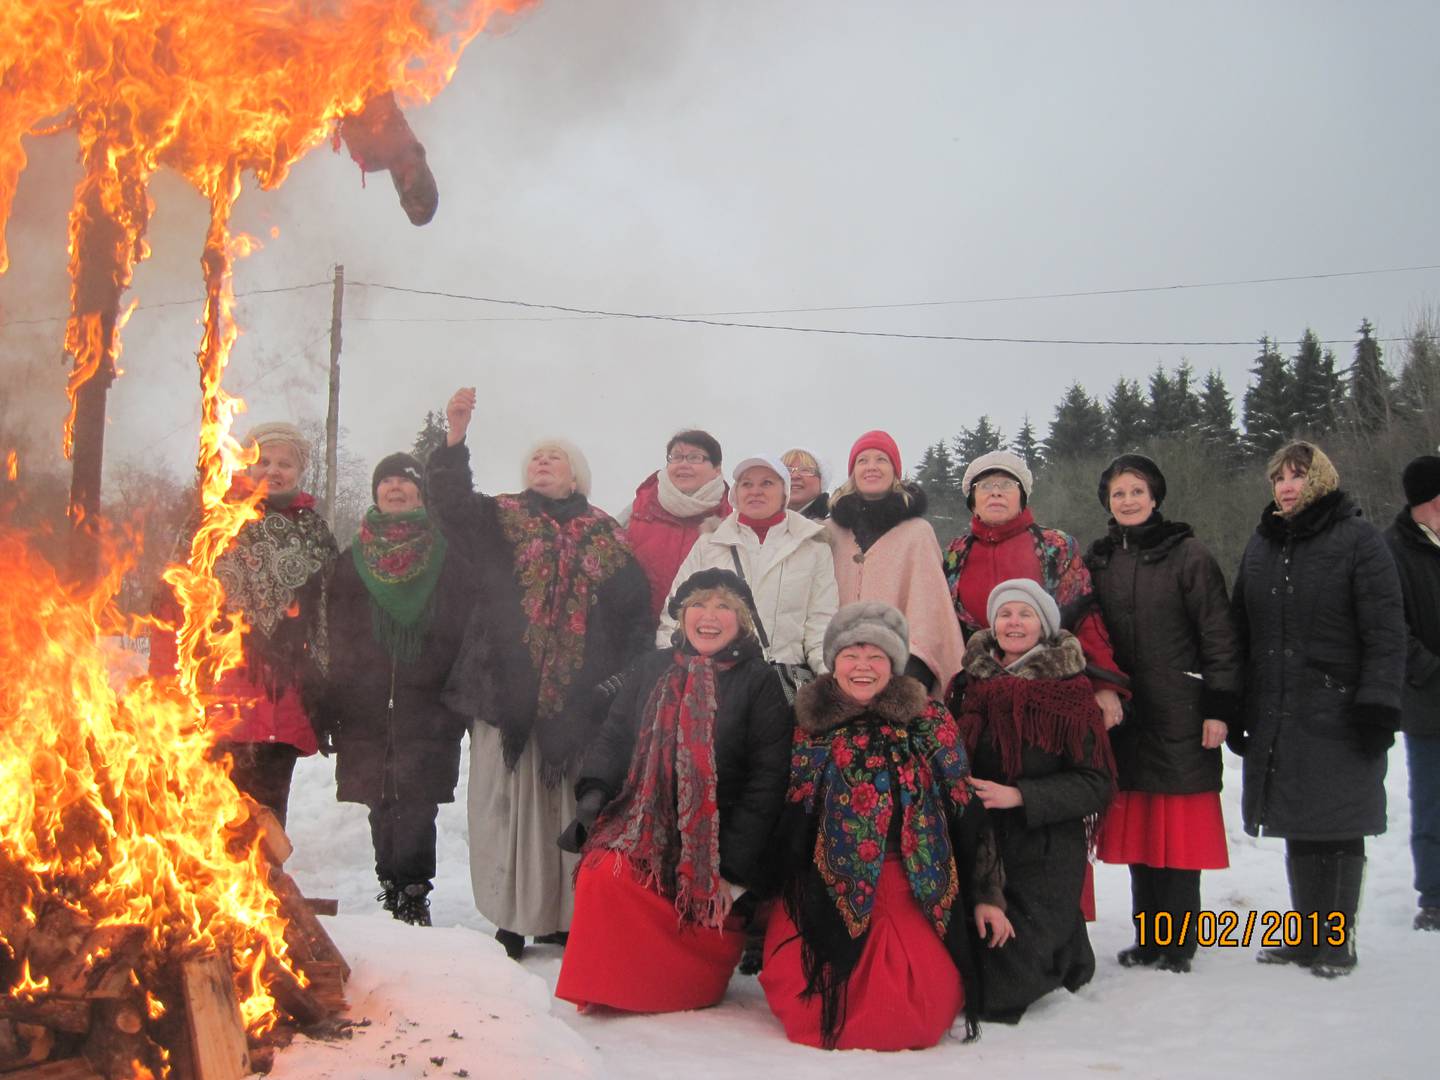 Fastelavnsfesten er viktig for ingermanlandsfinnene. Her brenner fastelavnsdukka, alle roper på finsk farvel til vinteren og ønsker våren velkommen. «Talvi – näkemiin! Kevät – tervetuloa».